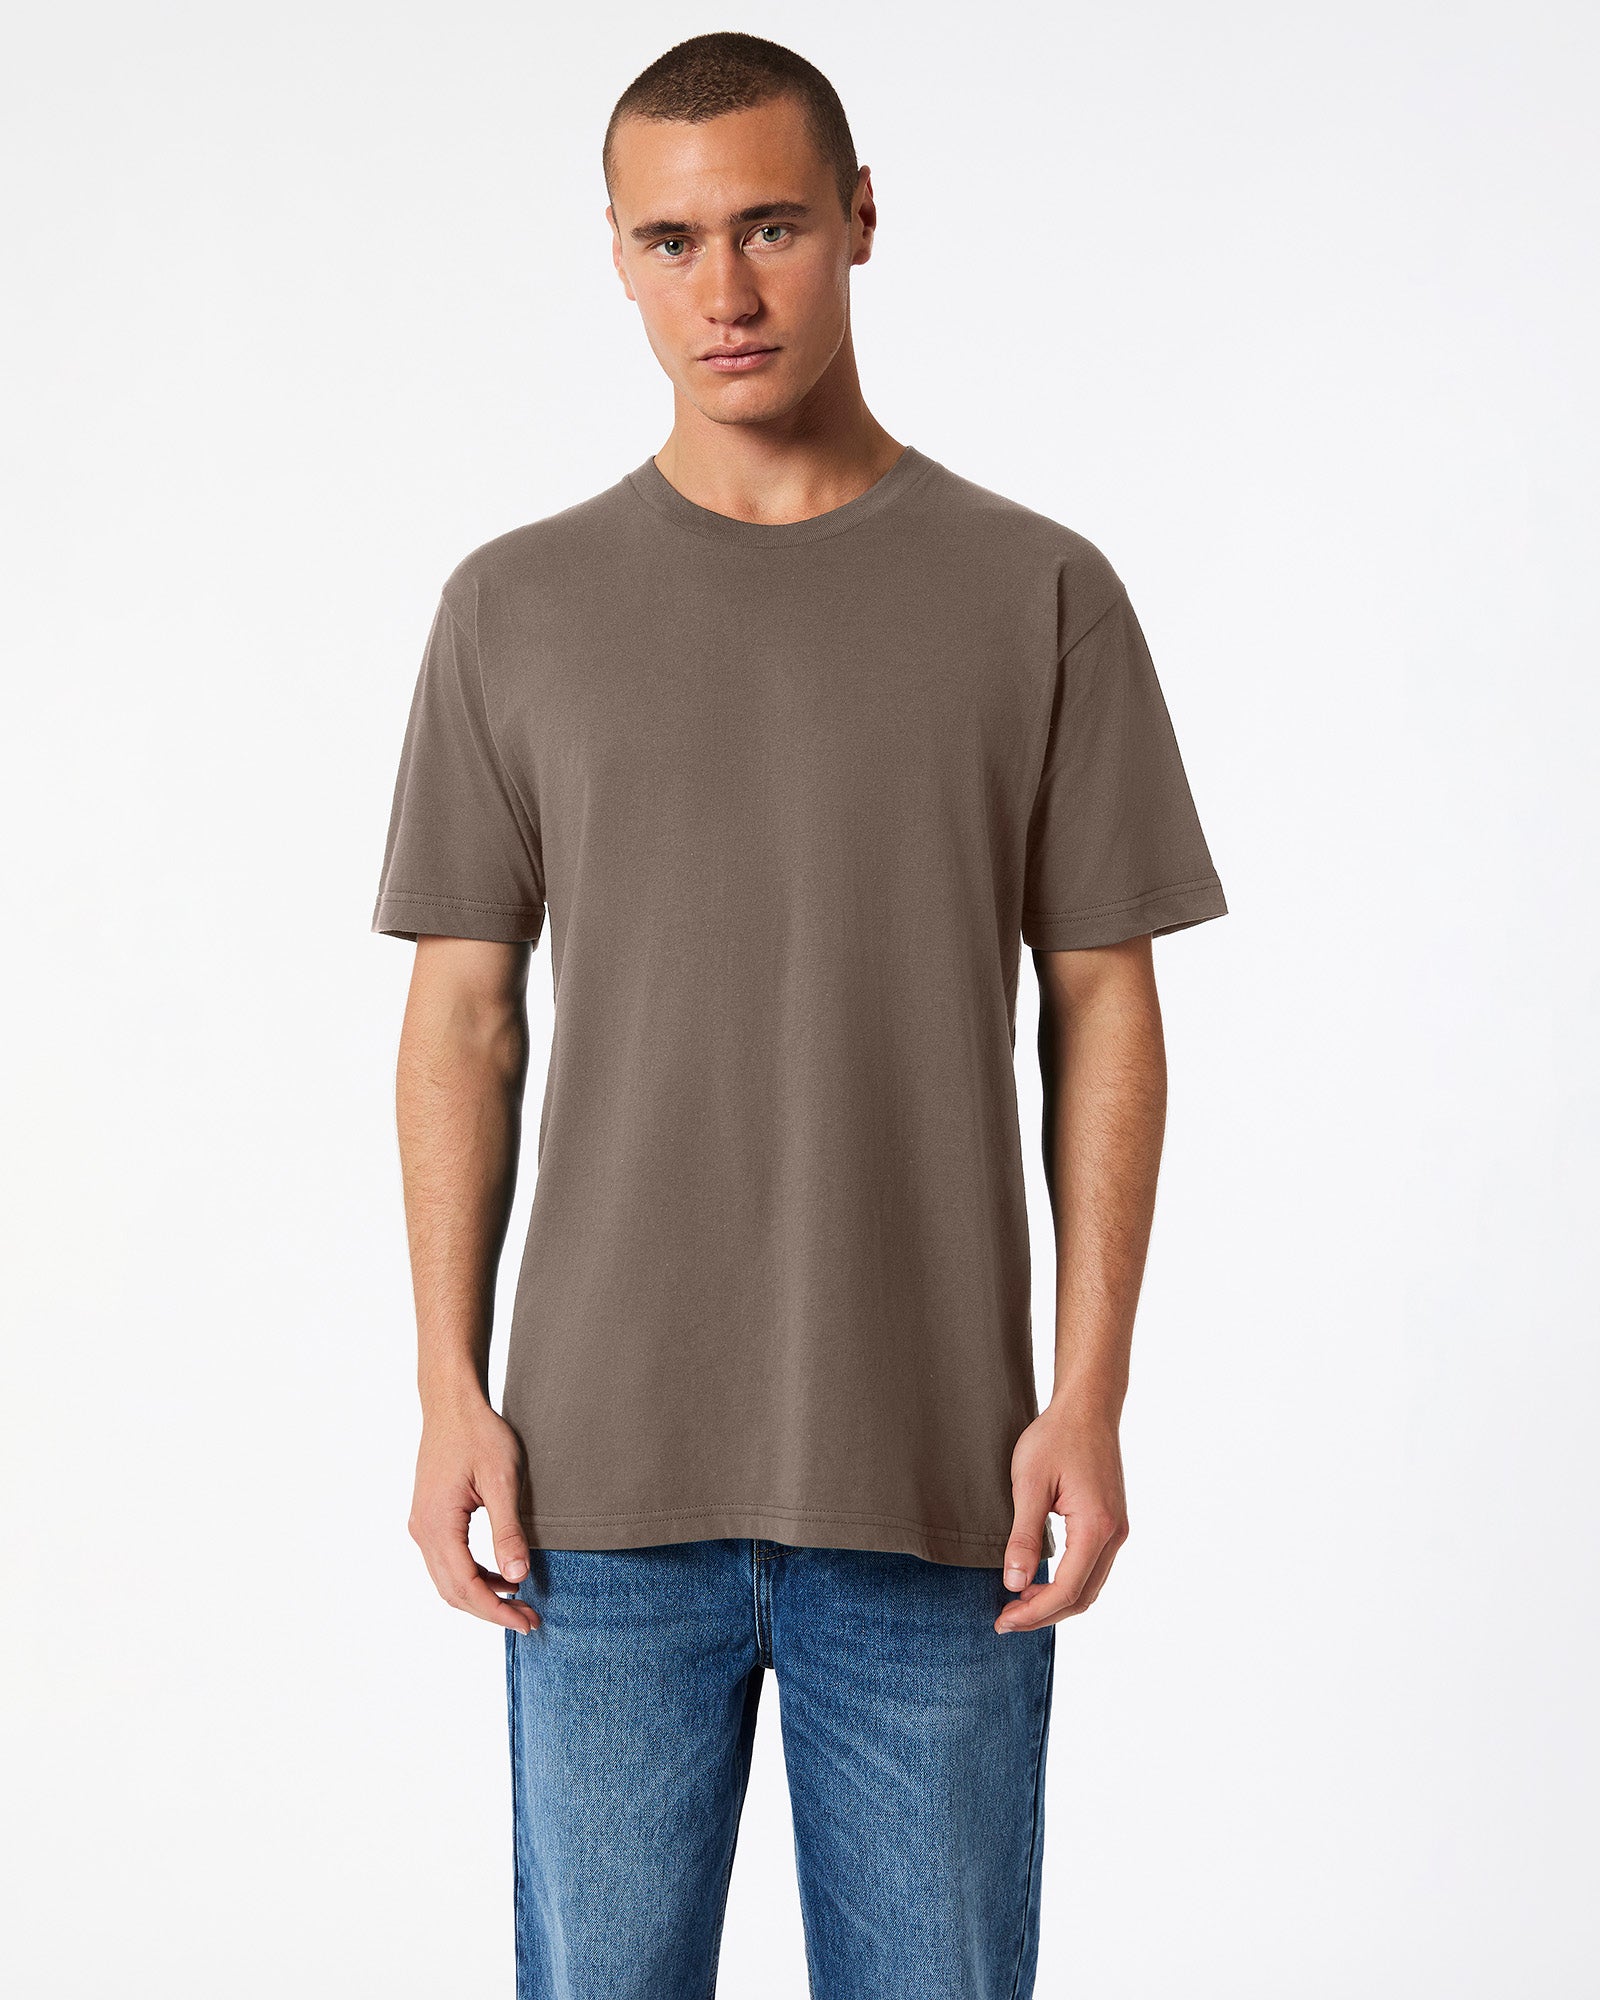 Fine Jersey Unisex Short Sleeve T-Shirt - Brown